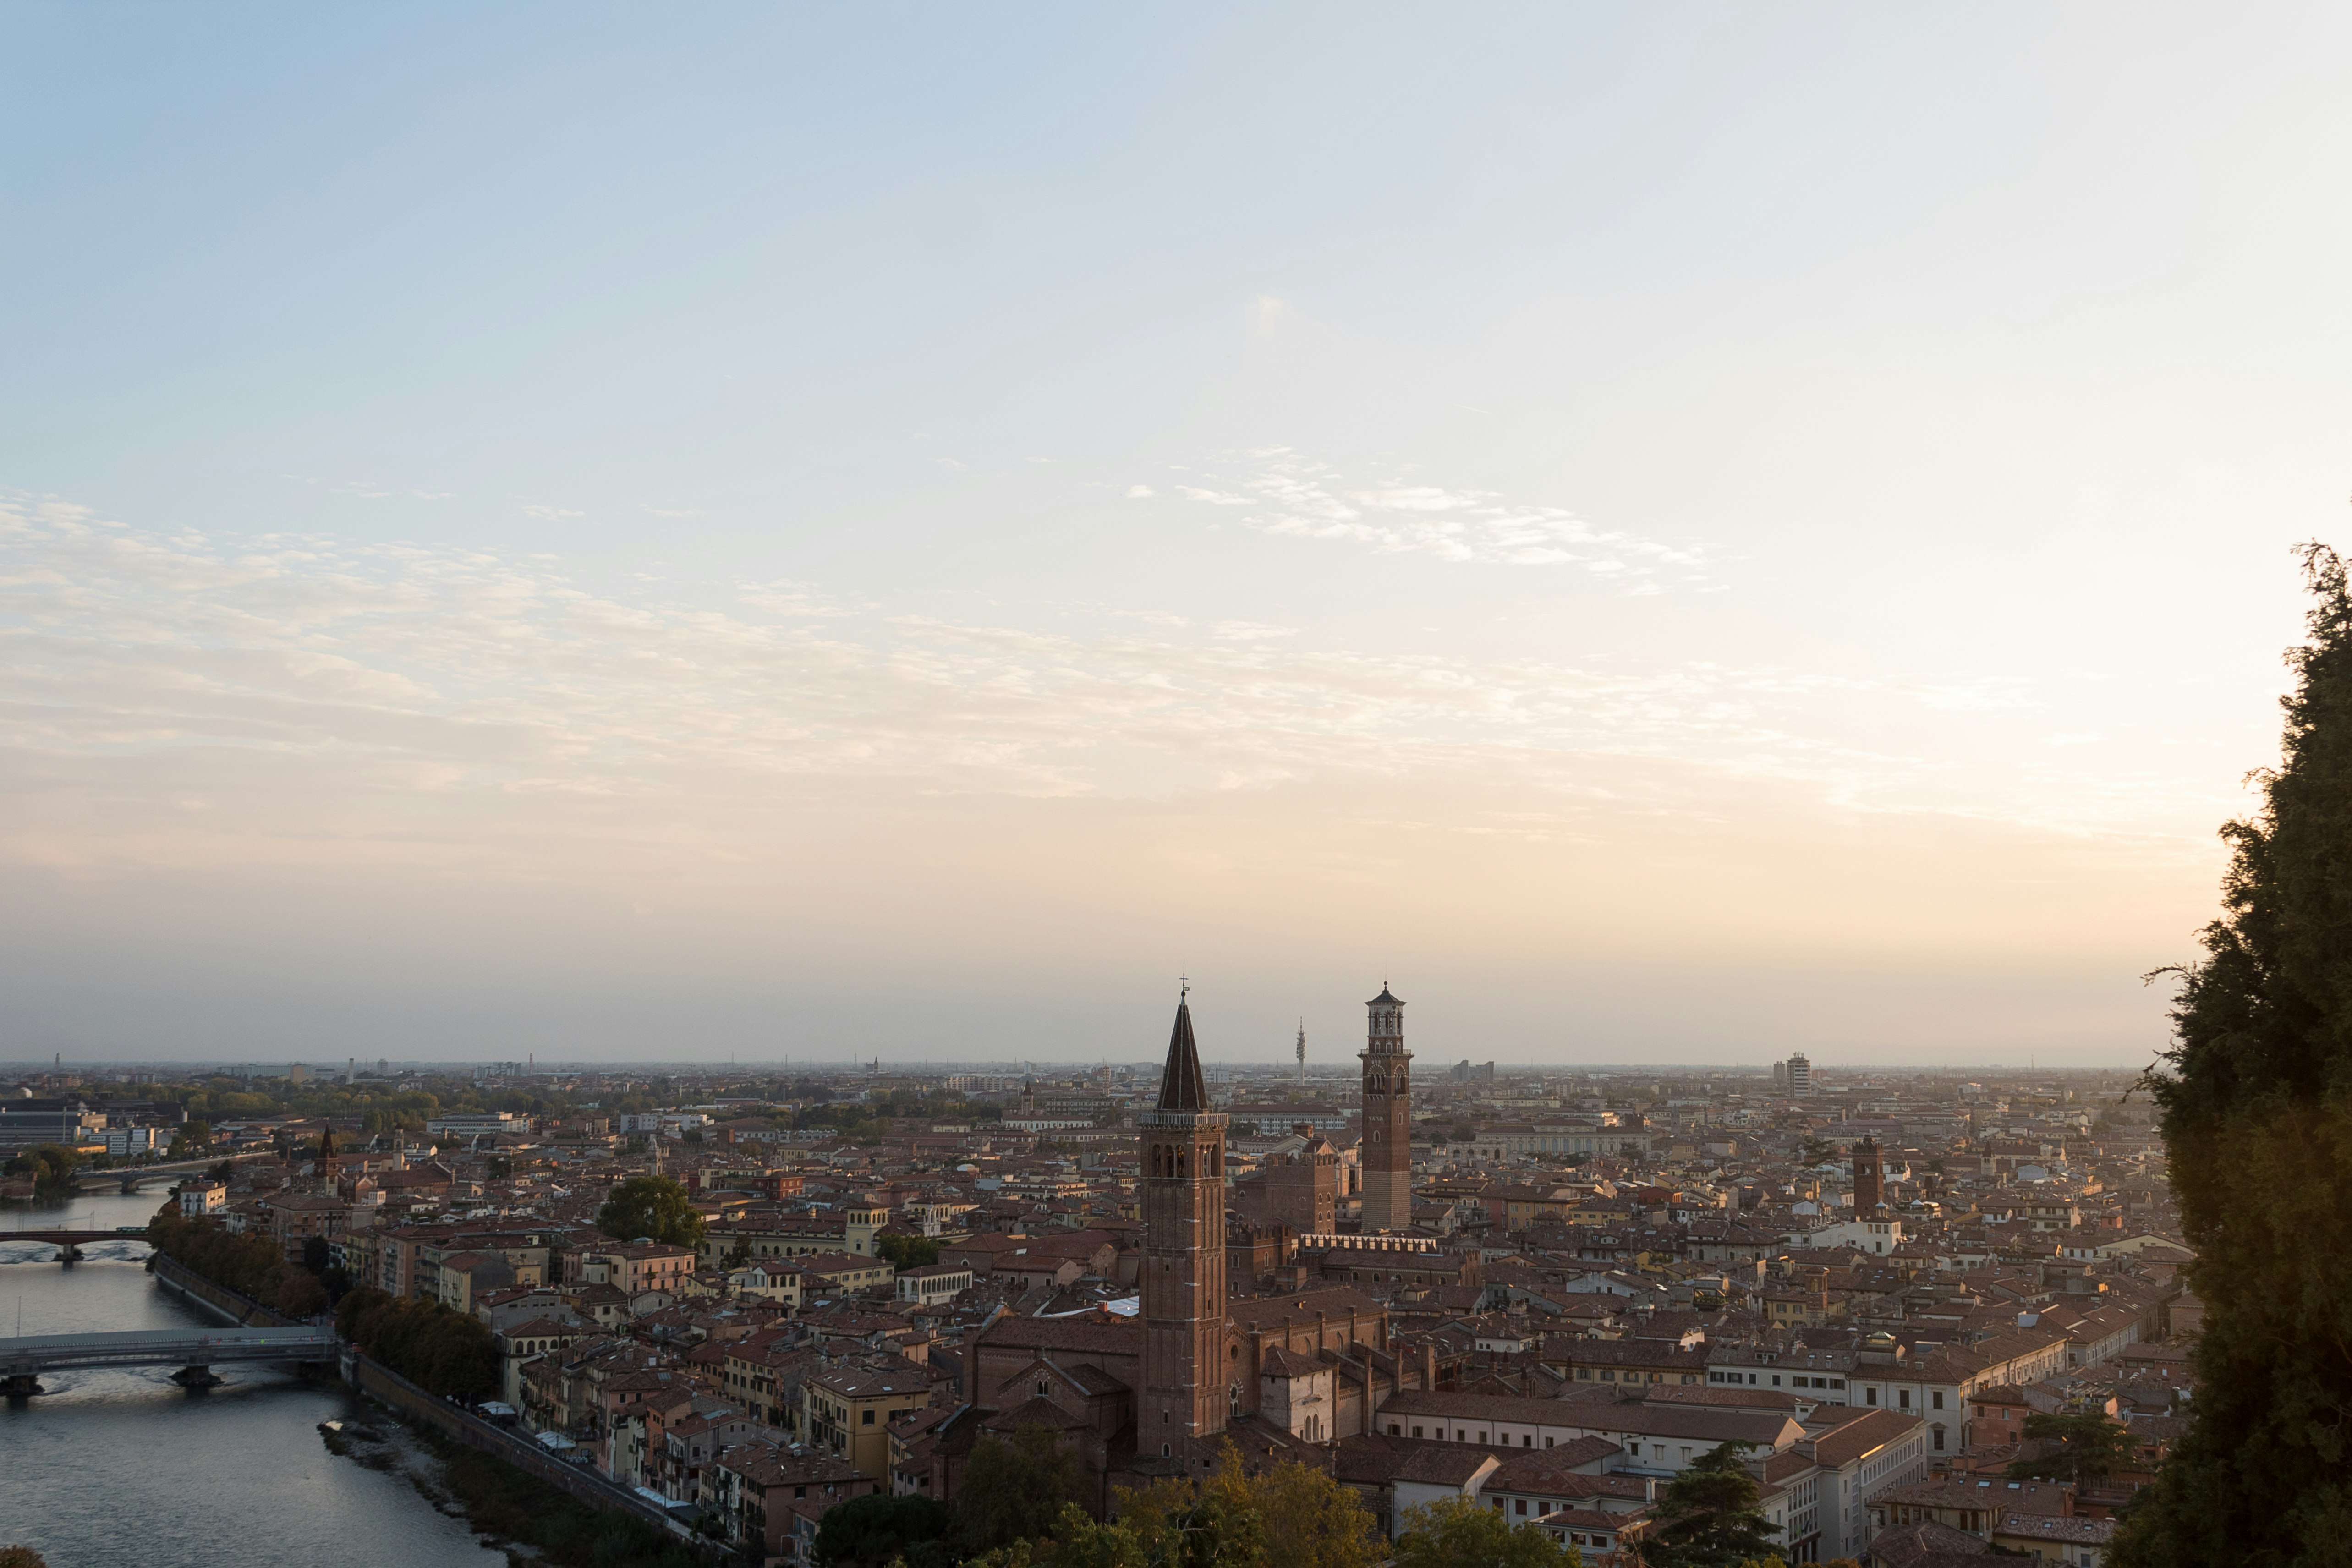 Beautiful panoramic view of Verona from the Funicolare di Castel San Pietro.